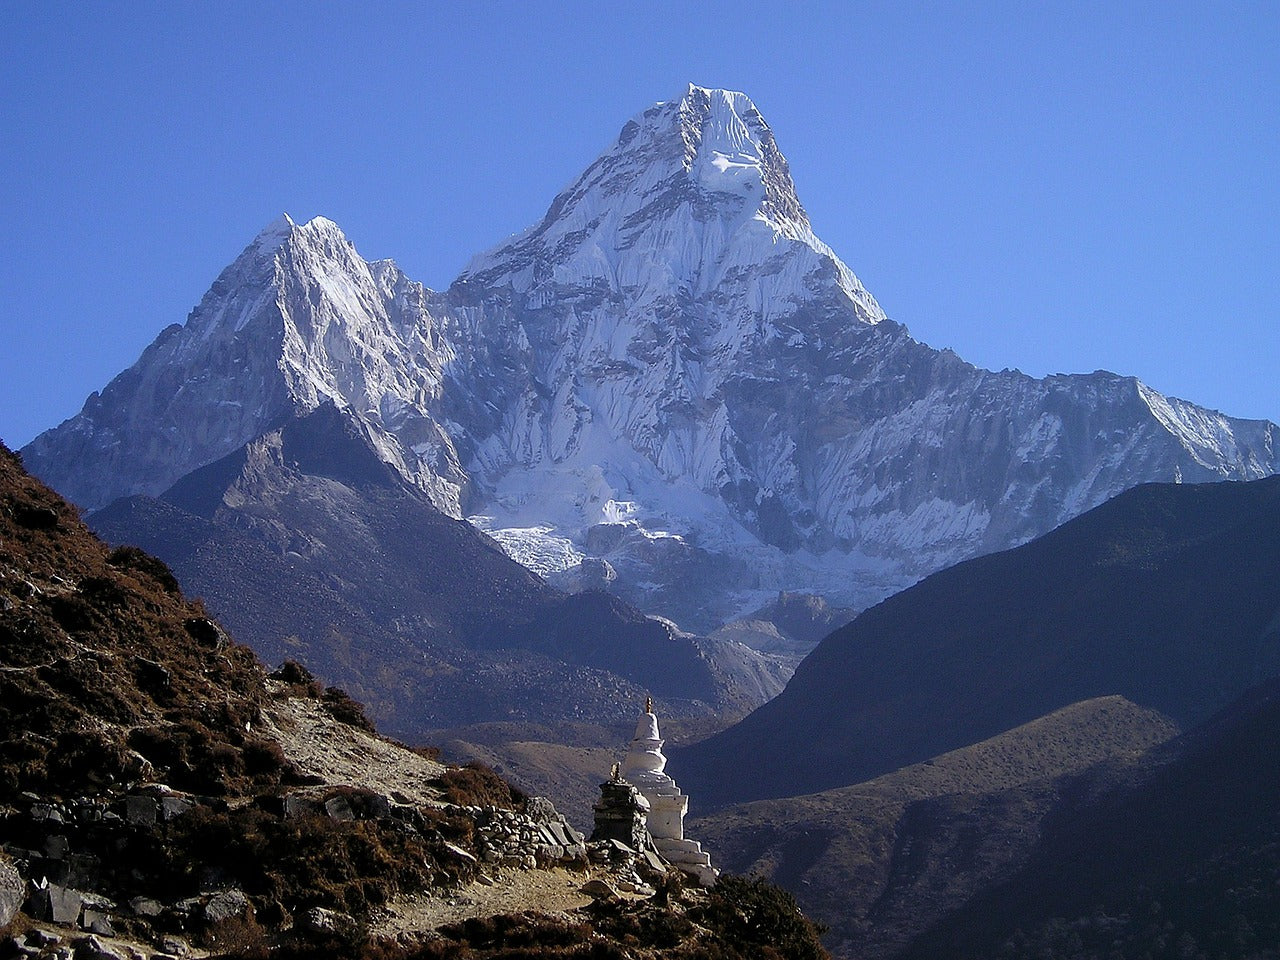 KRISTALLSALZ aus den Ausläufern des Himalaya, grob gemahlen für die Mühle